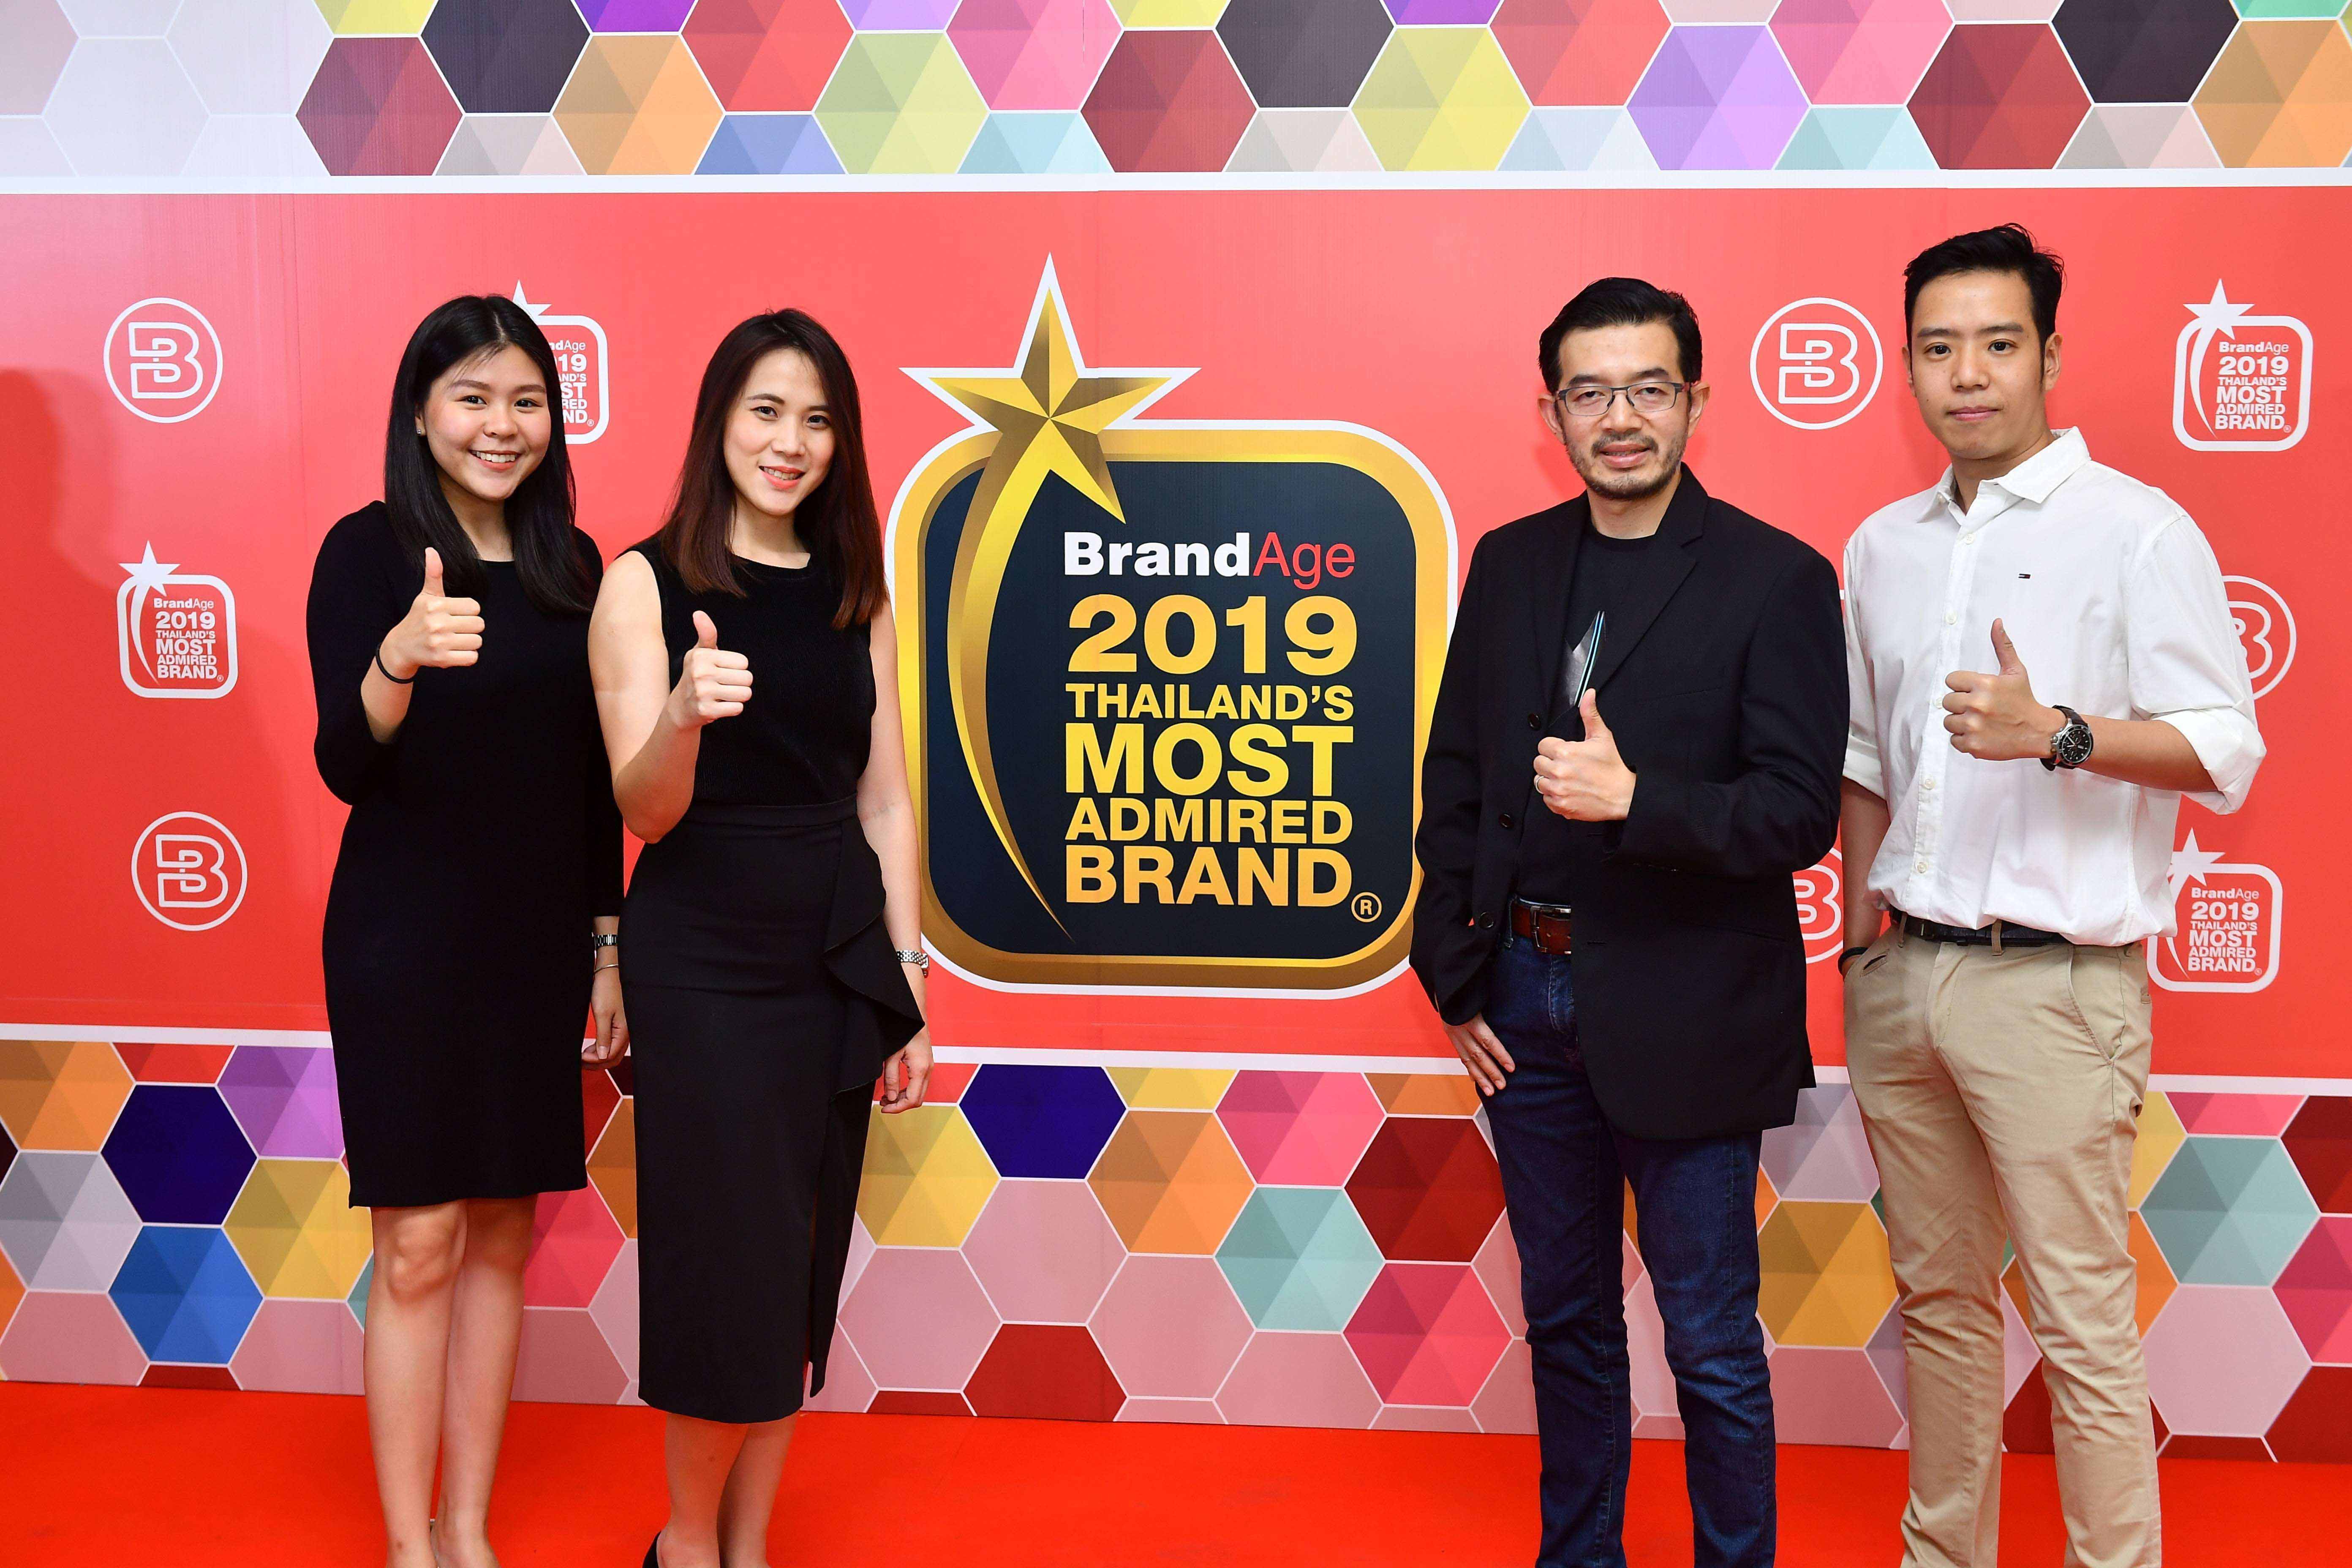 arr 2066 final เอเซอร์ ย้ำภาพผู้นำนวัตกรรมไอที รับรางวัล Thailand’s Most Admired Brand 2019 สุดยอดแบรนด์ครองใจมหาชนเป็นปีที่ 9 ในกลุ่มคอมพิวเตอร์พกพาที่น่าเชื่อถือที่สุด